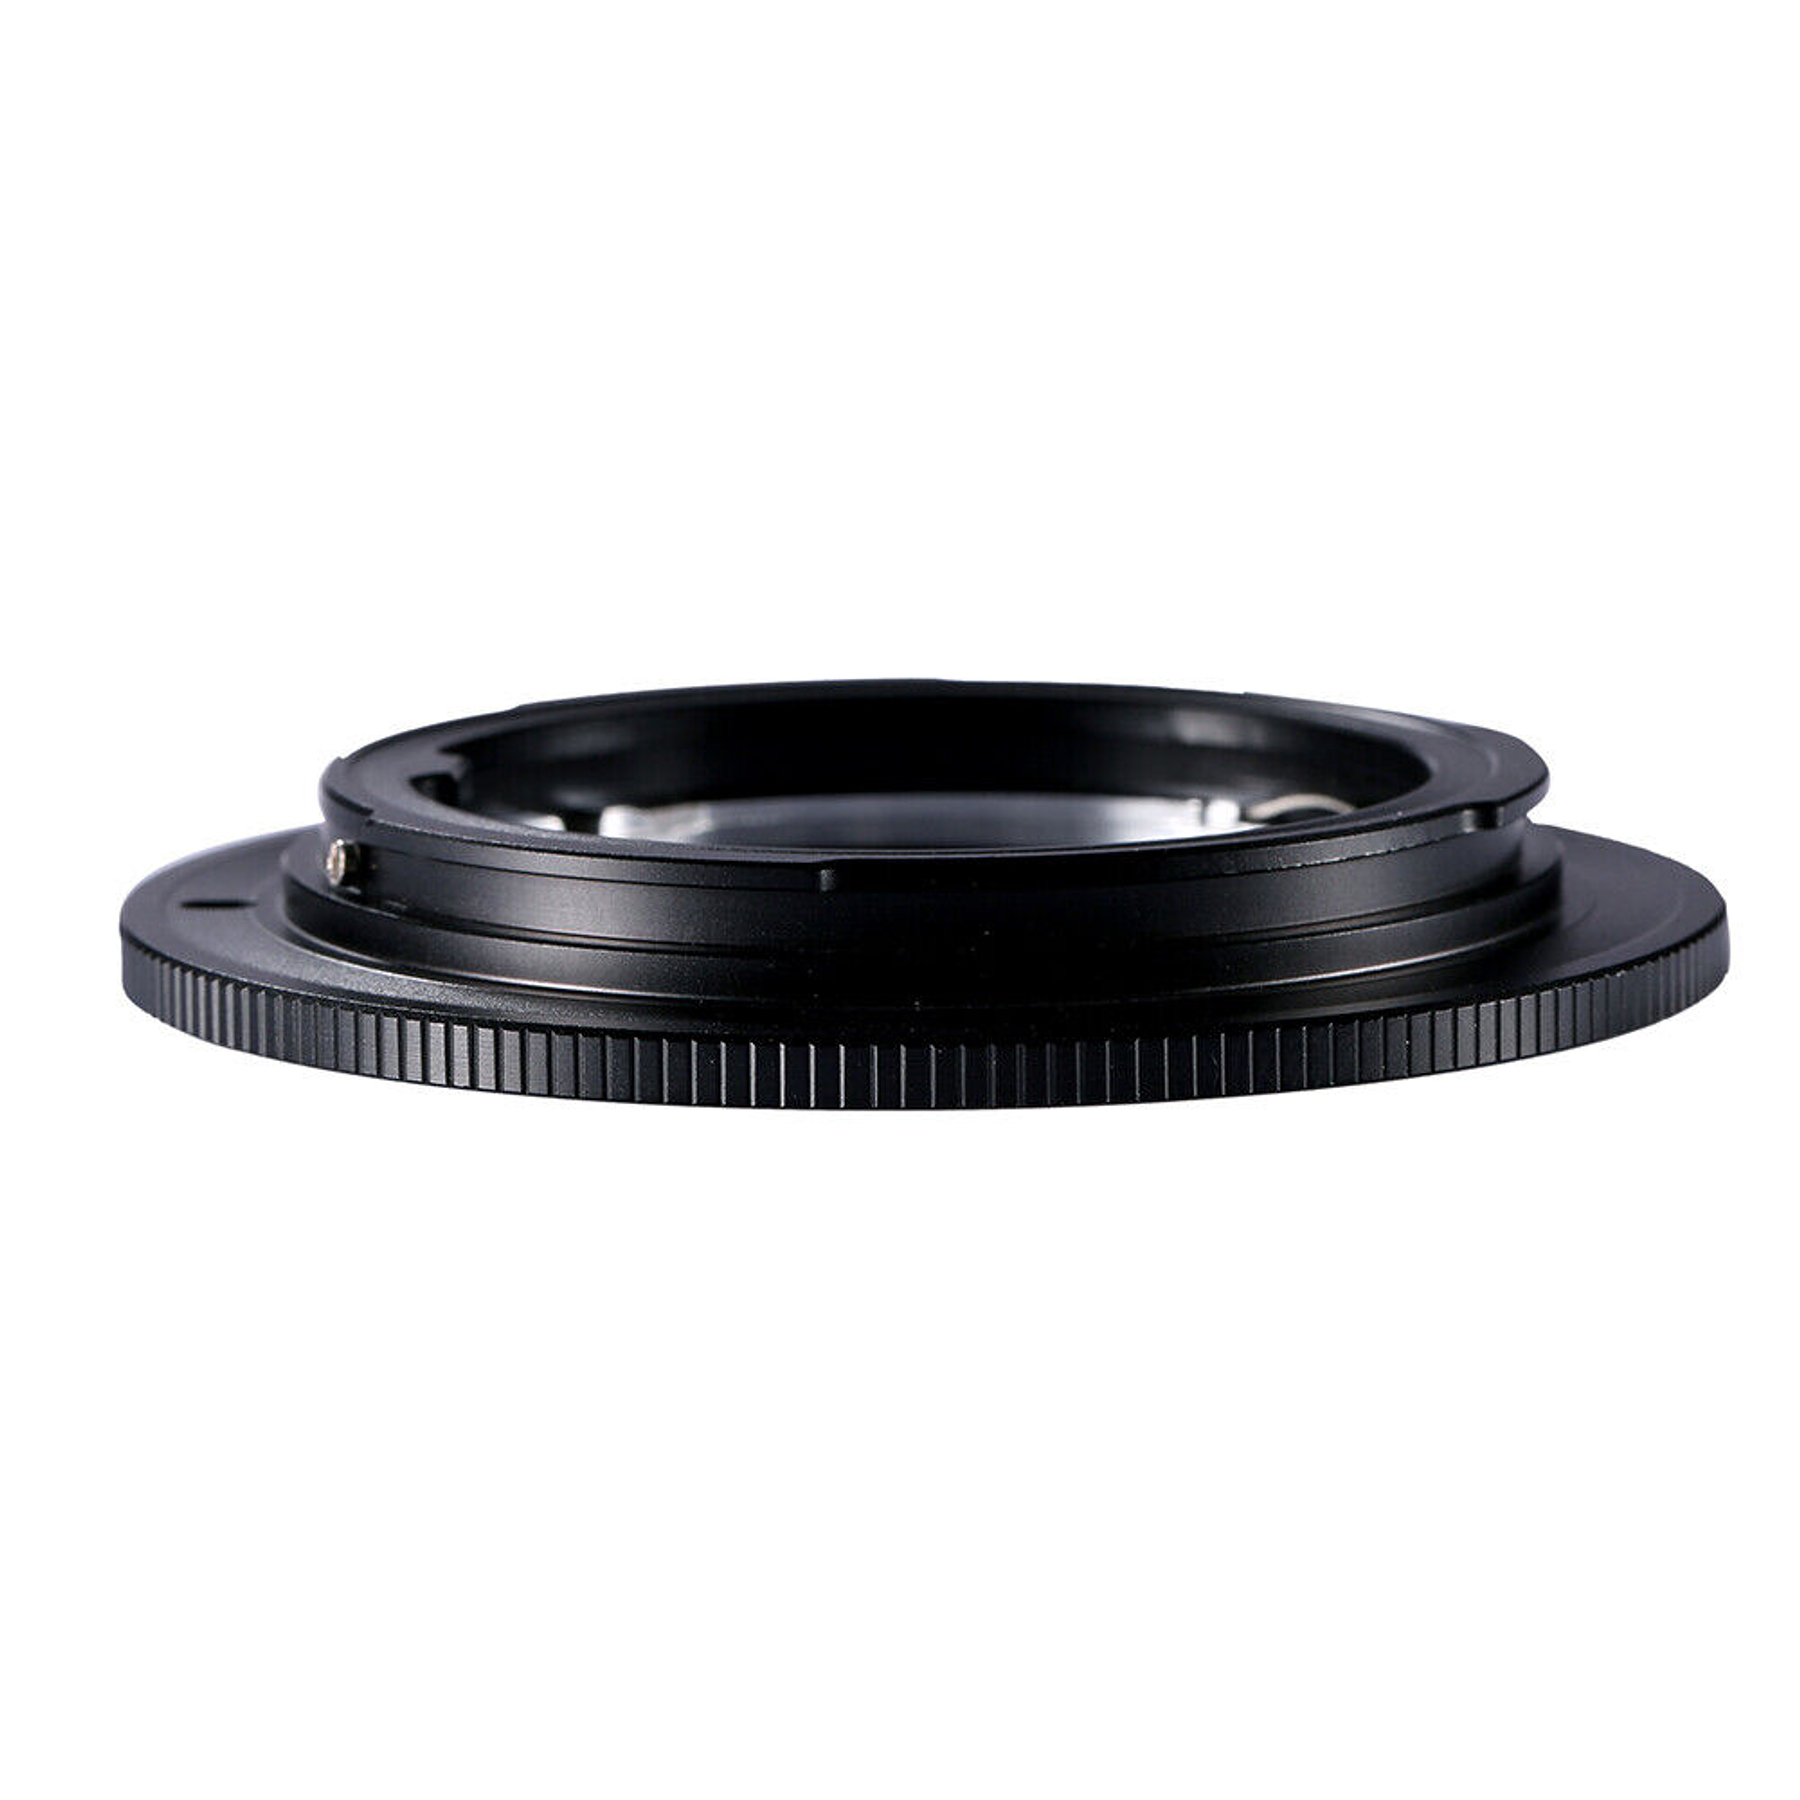 Adaptador de montaje de lente Olympus OM a Canon EOS EF 5D2 5D3 60D 70D 550D K&F Concept